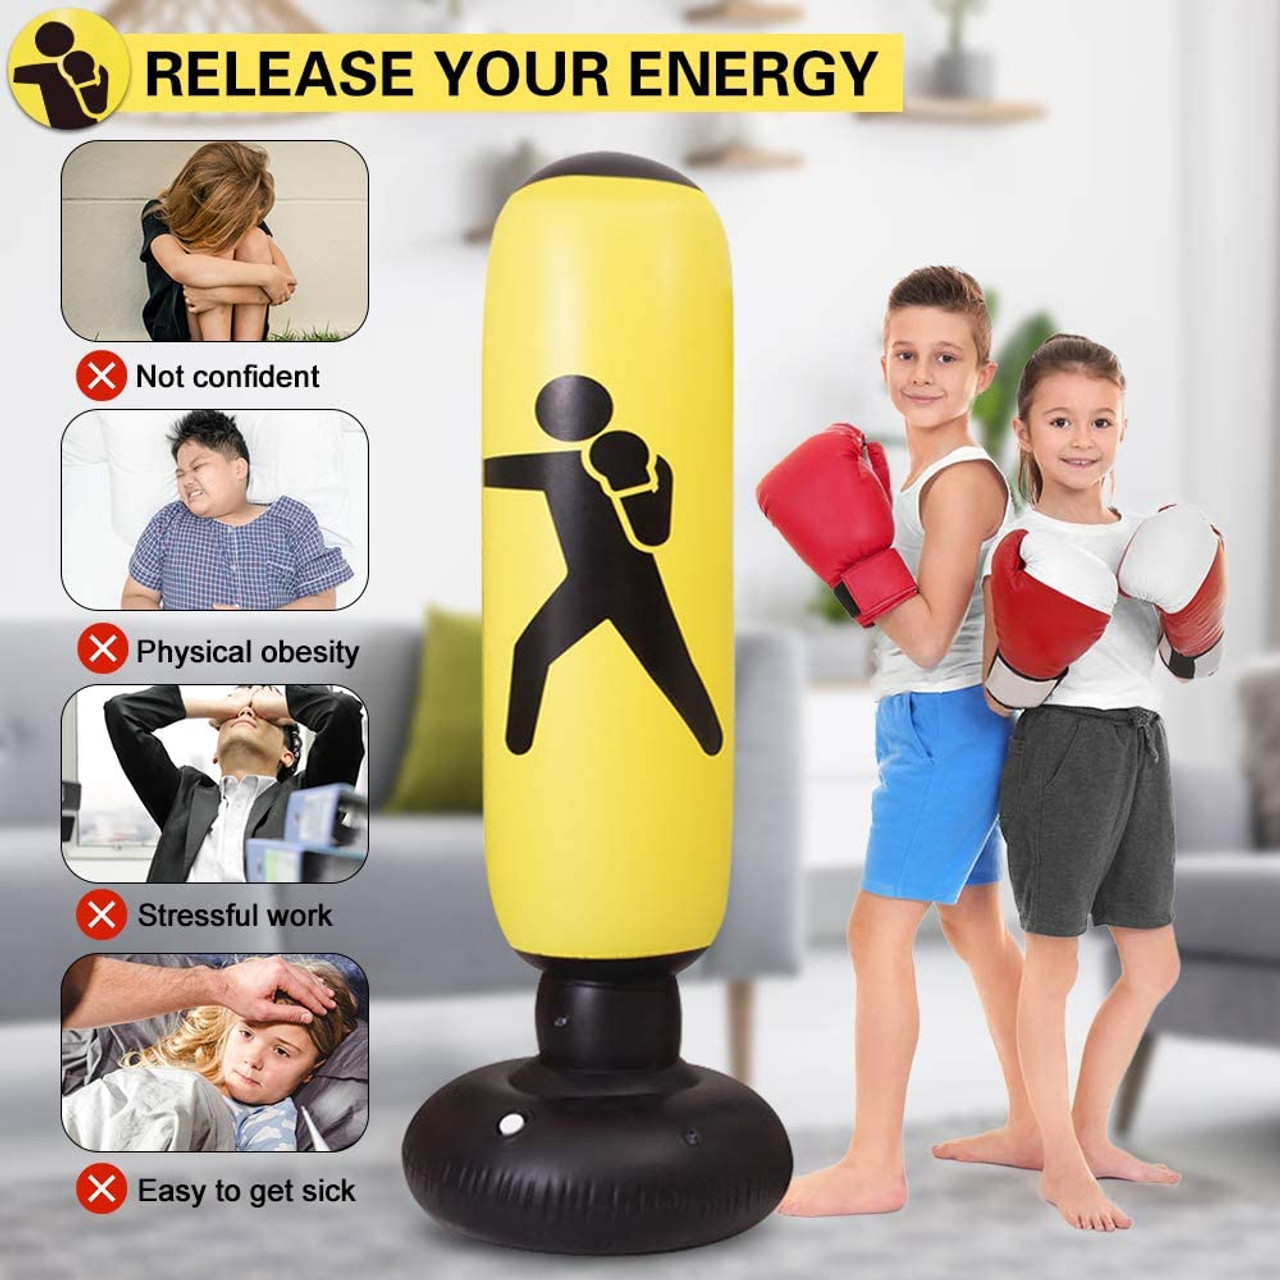 Kids' Freestanding Punching Bag product image